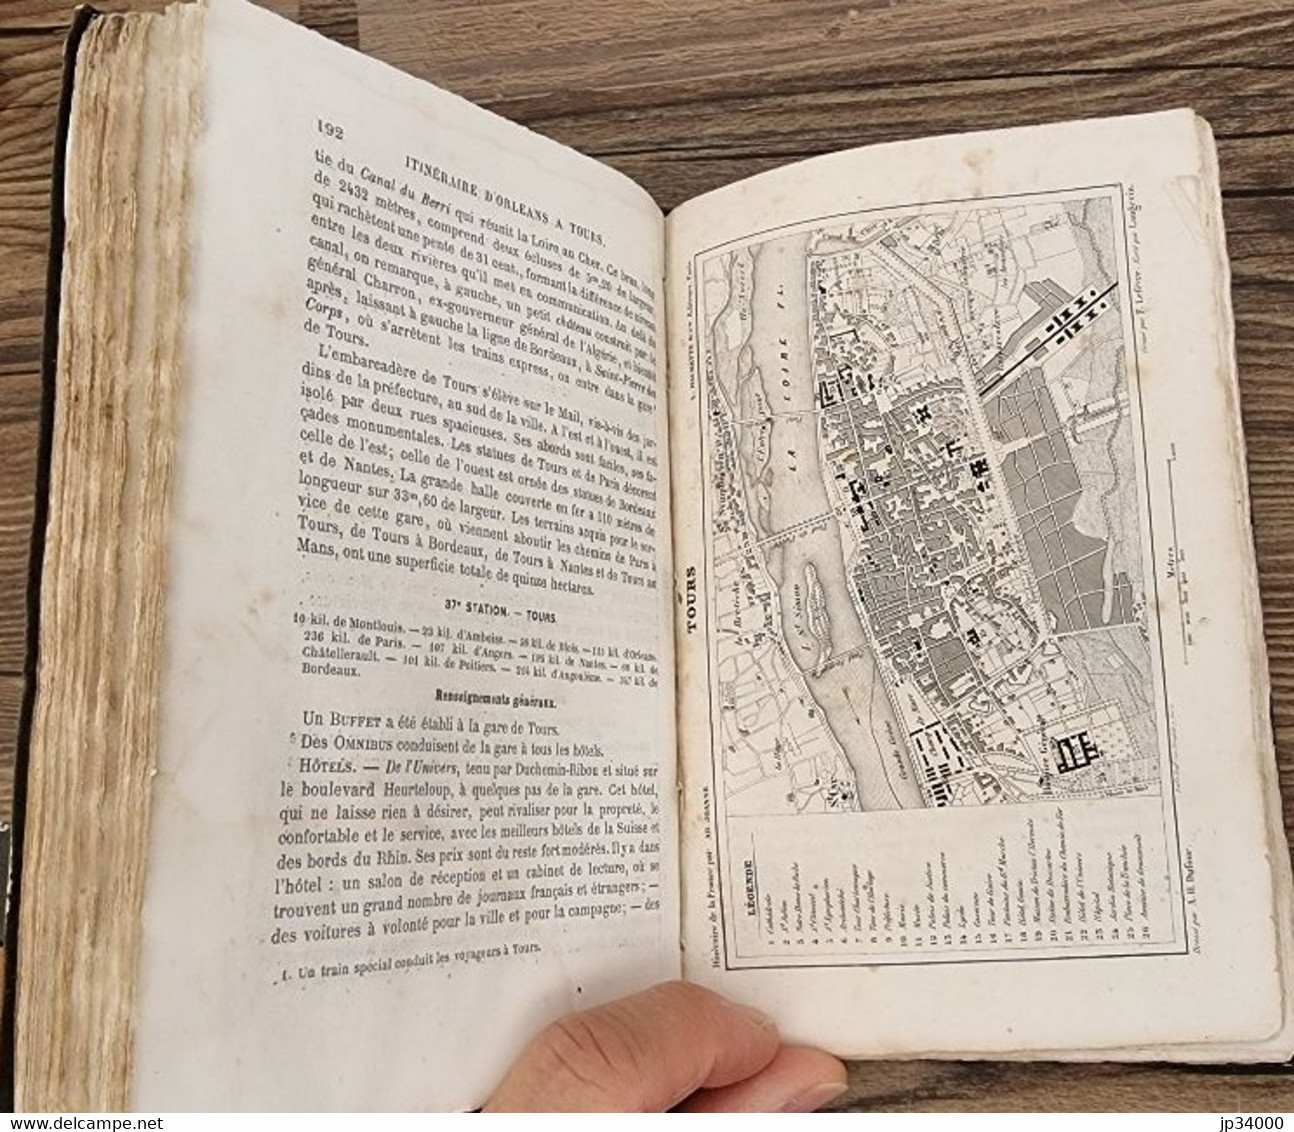 Adolphe JOANNE: Guide de Paris à Bordeaux. cartes, plans et 117 gravures.1865